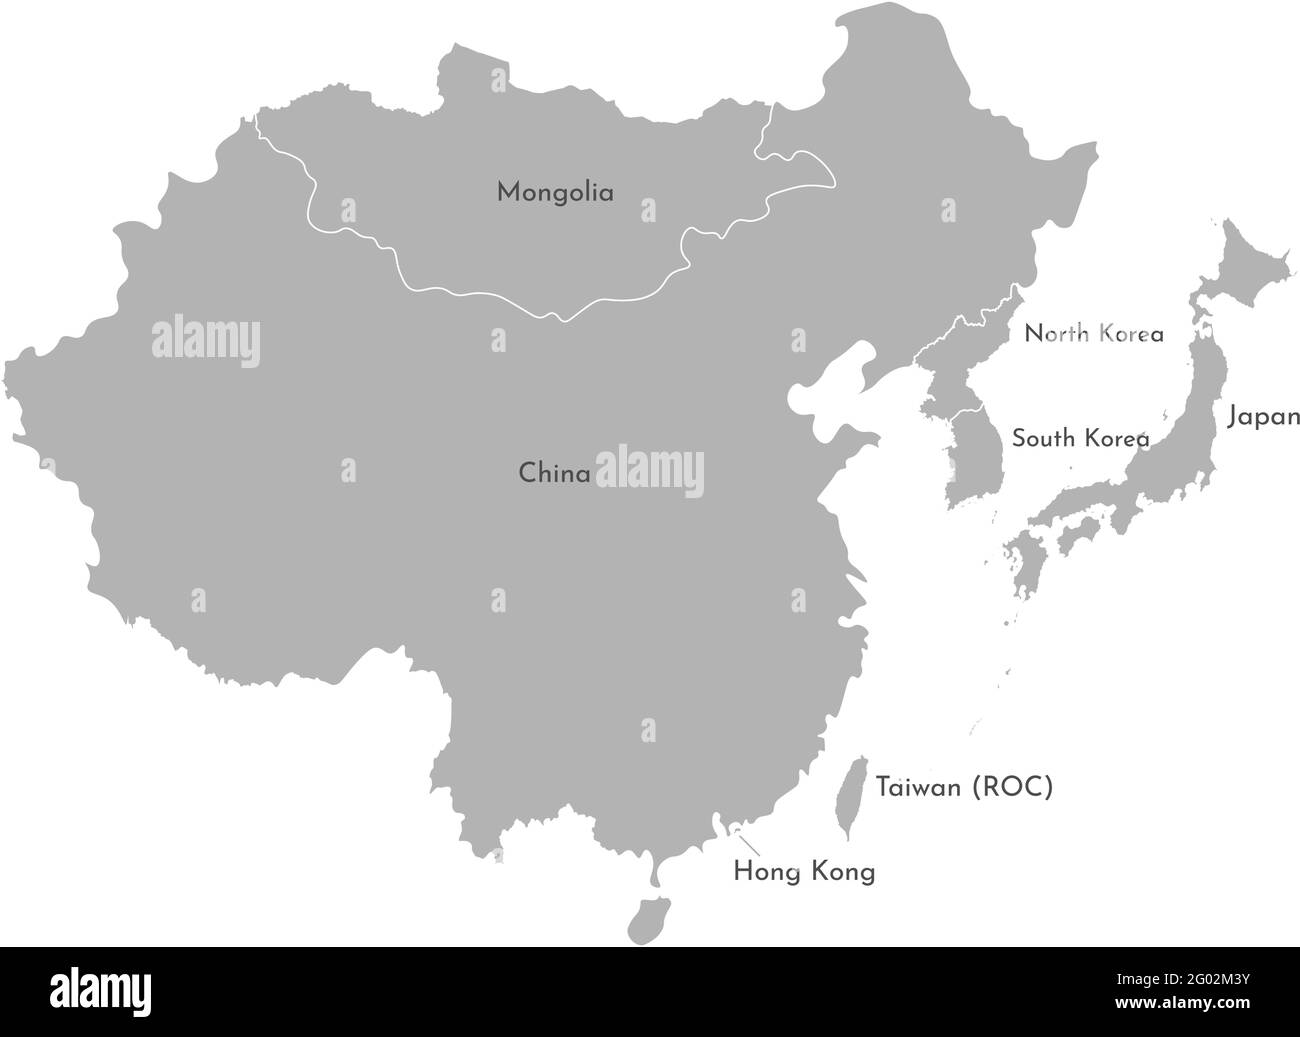 Vektordarstellung mit vereinfachter Karte asiatischer Länder. Ostregion. Staaten Grenzen und Namen von China, Japan, Süd- und Nordkorea, Taiwan, Mong Stock Vektor